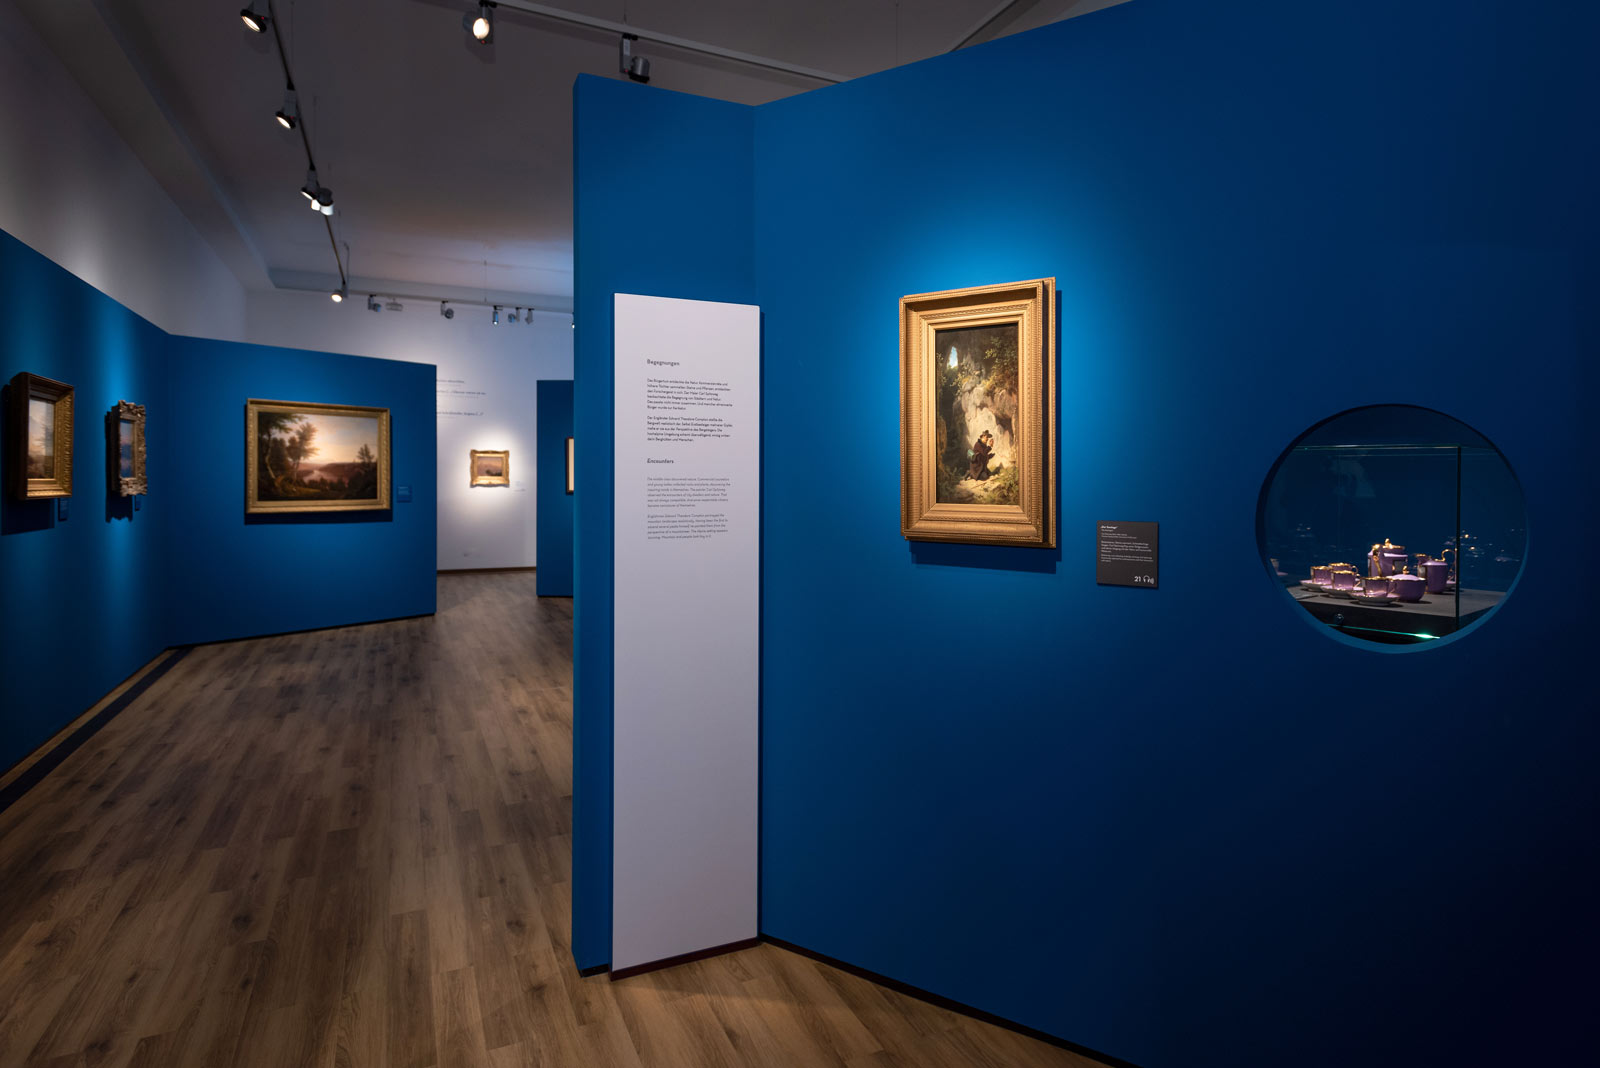 Das Referenzbild für Ausstellungsgestaltung aus der Sonderausstellung Wald, Gebirg und Königstraum – Mythos Bayern zeigt eine Gemäldegalerie.